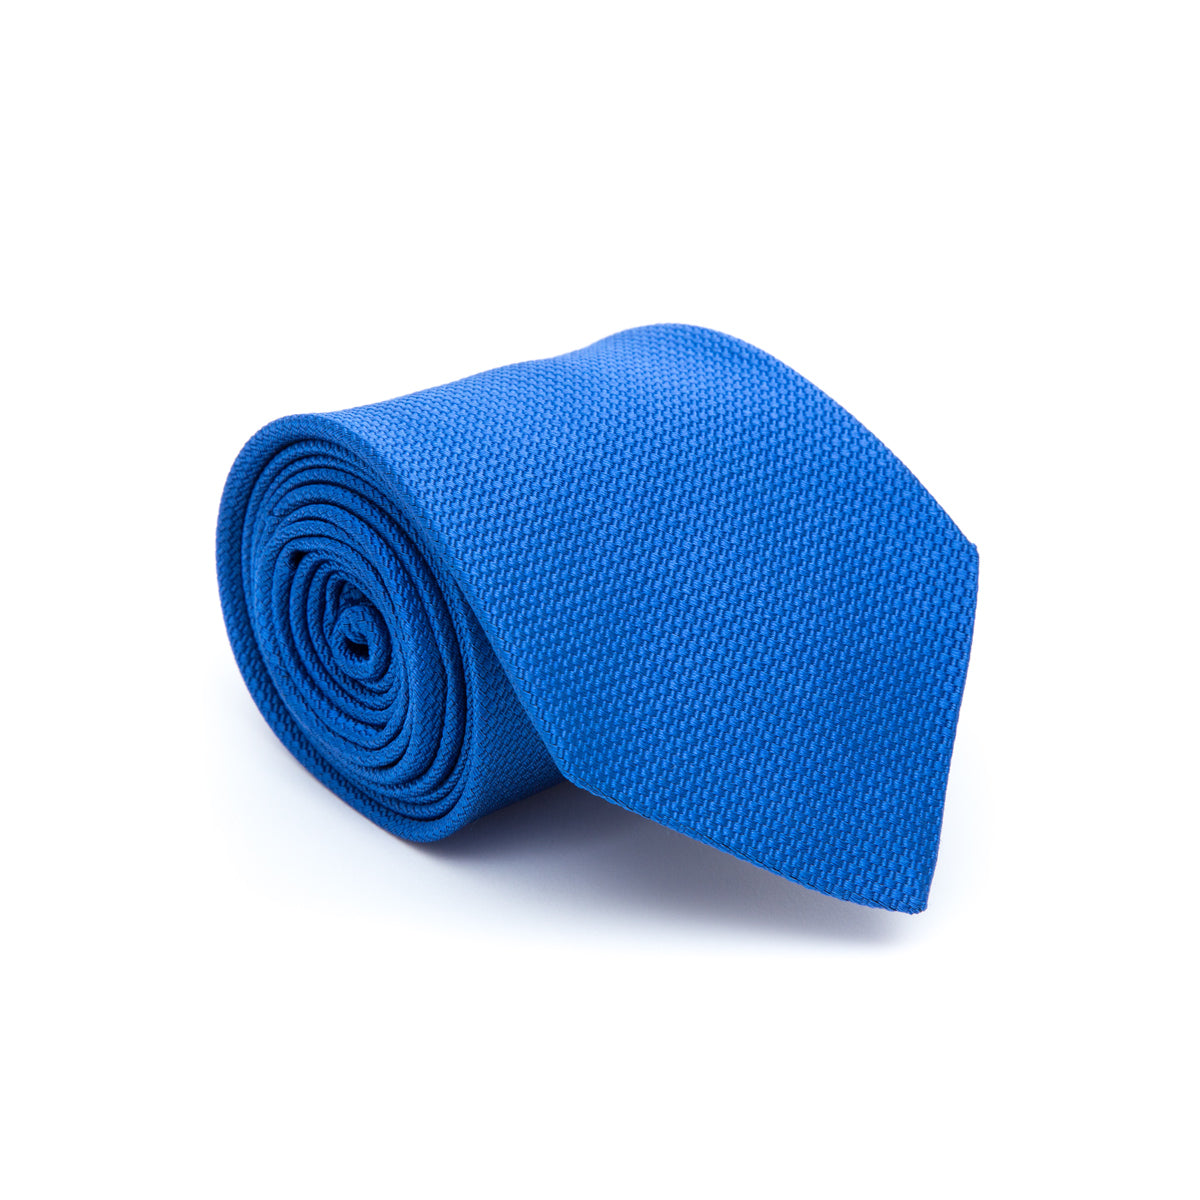 France blue plain tie